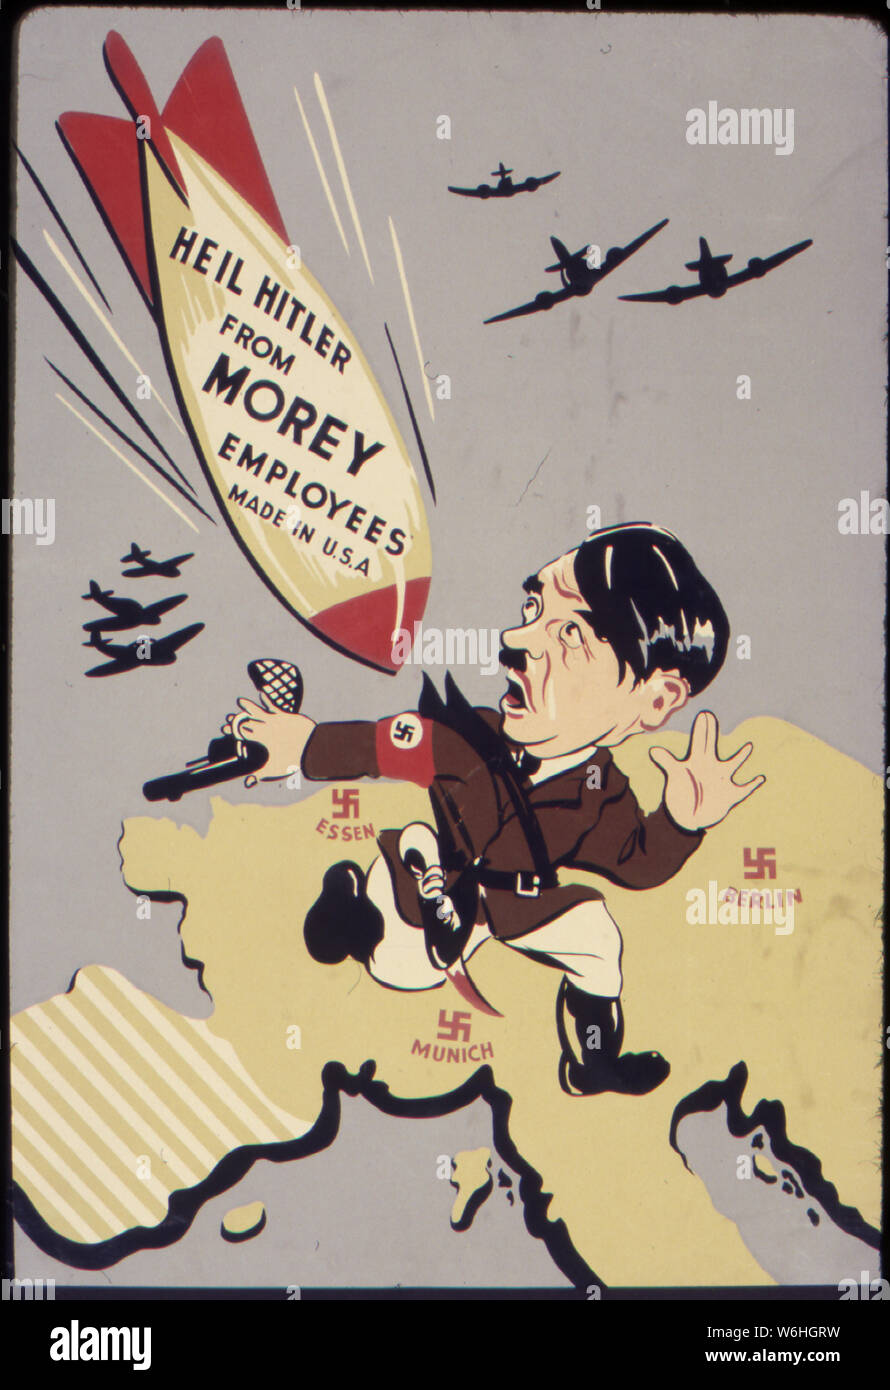 Heil Hitler da Morey dipendenti. Prodotto negli U.S.A. Foto Stock